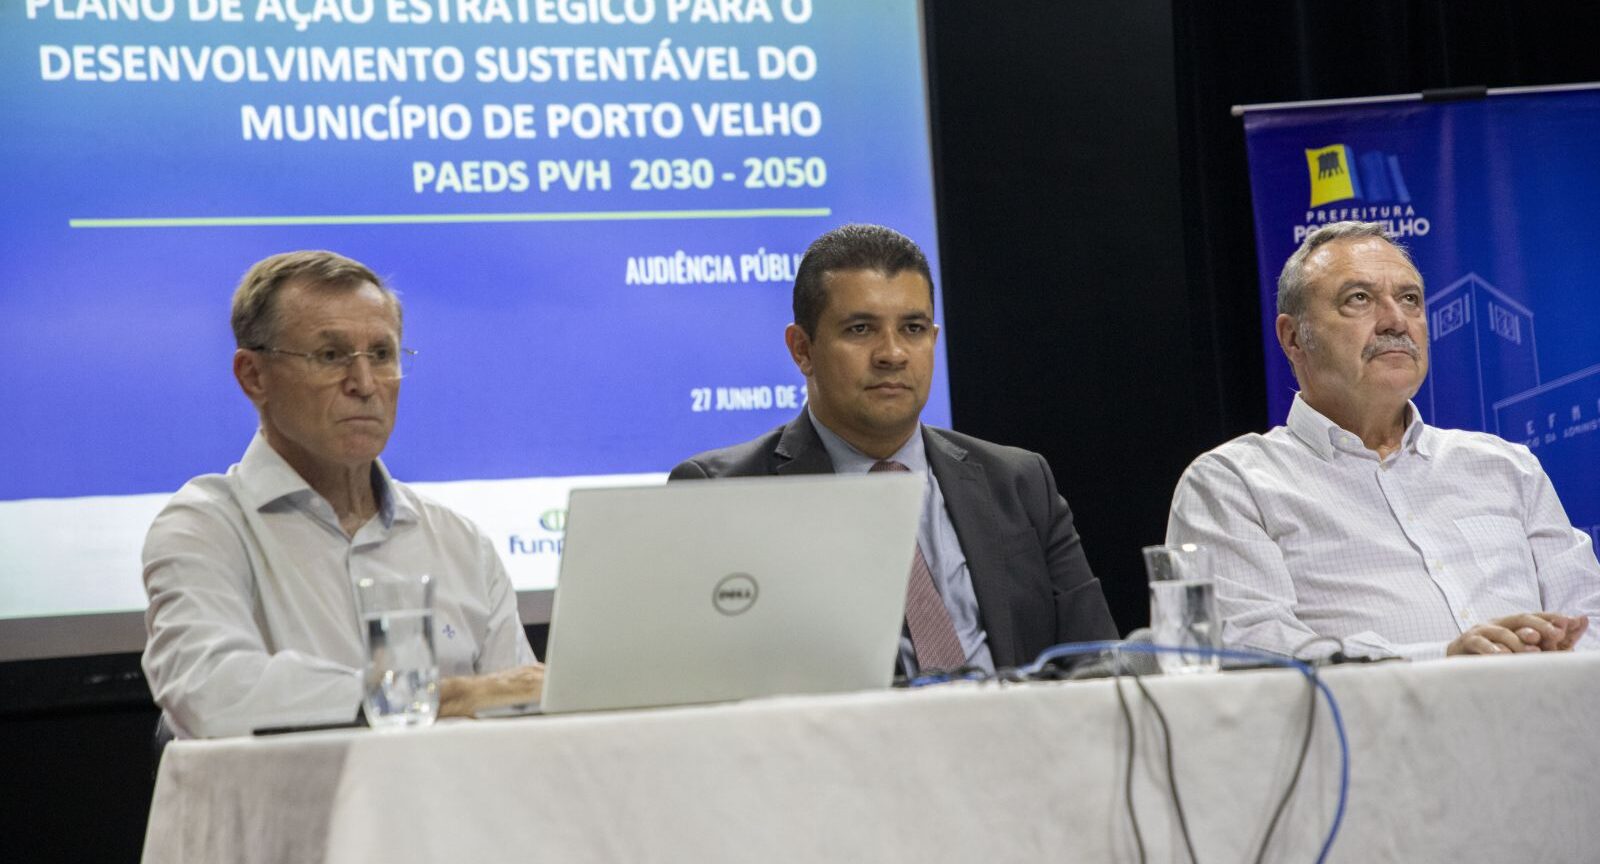 Audiência pública apresenta Plano de Desenvolvimento Econômico Sustentável para Porto Velho